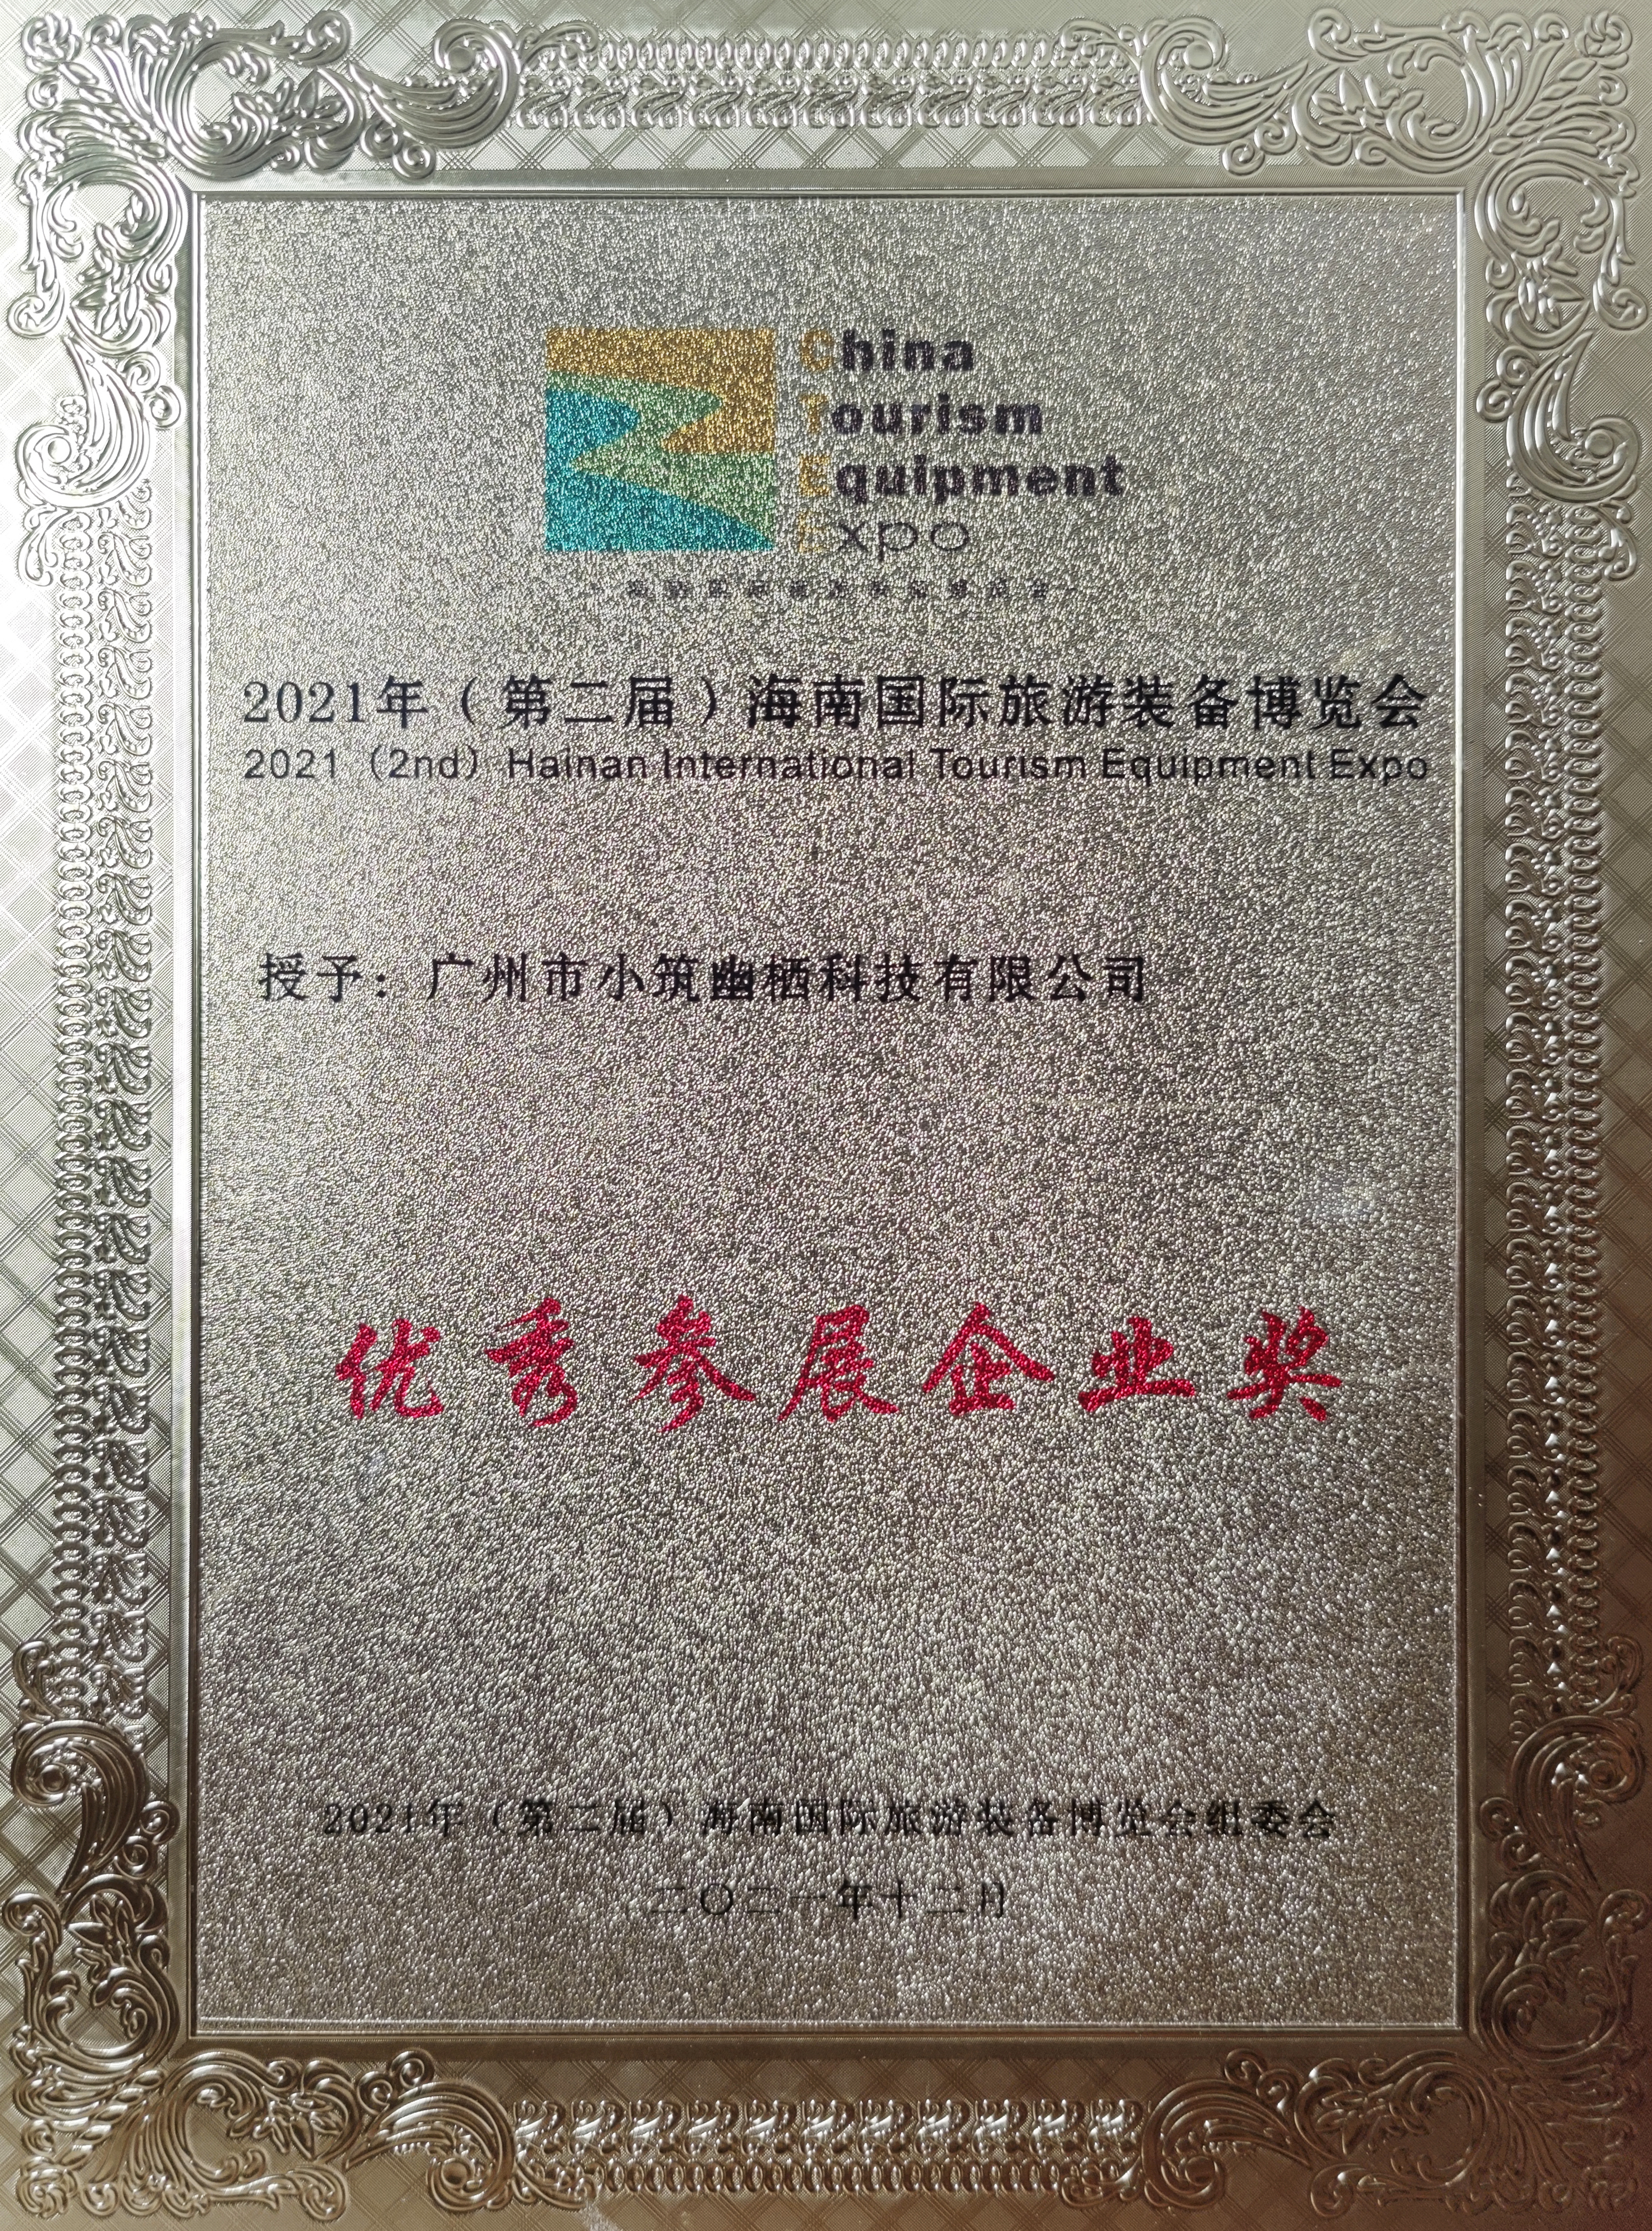 certificat de onoare (1)